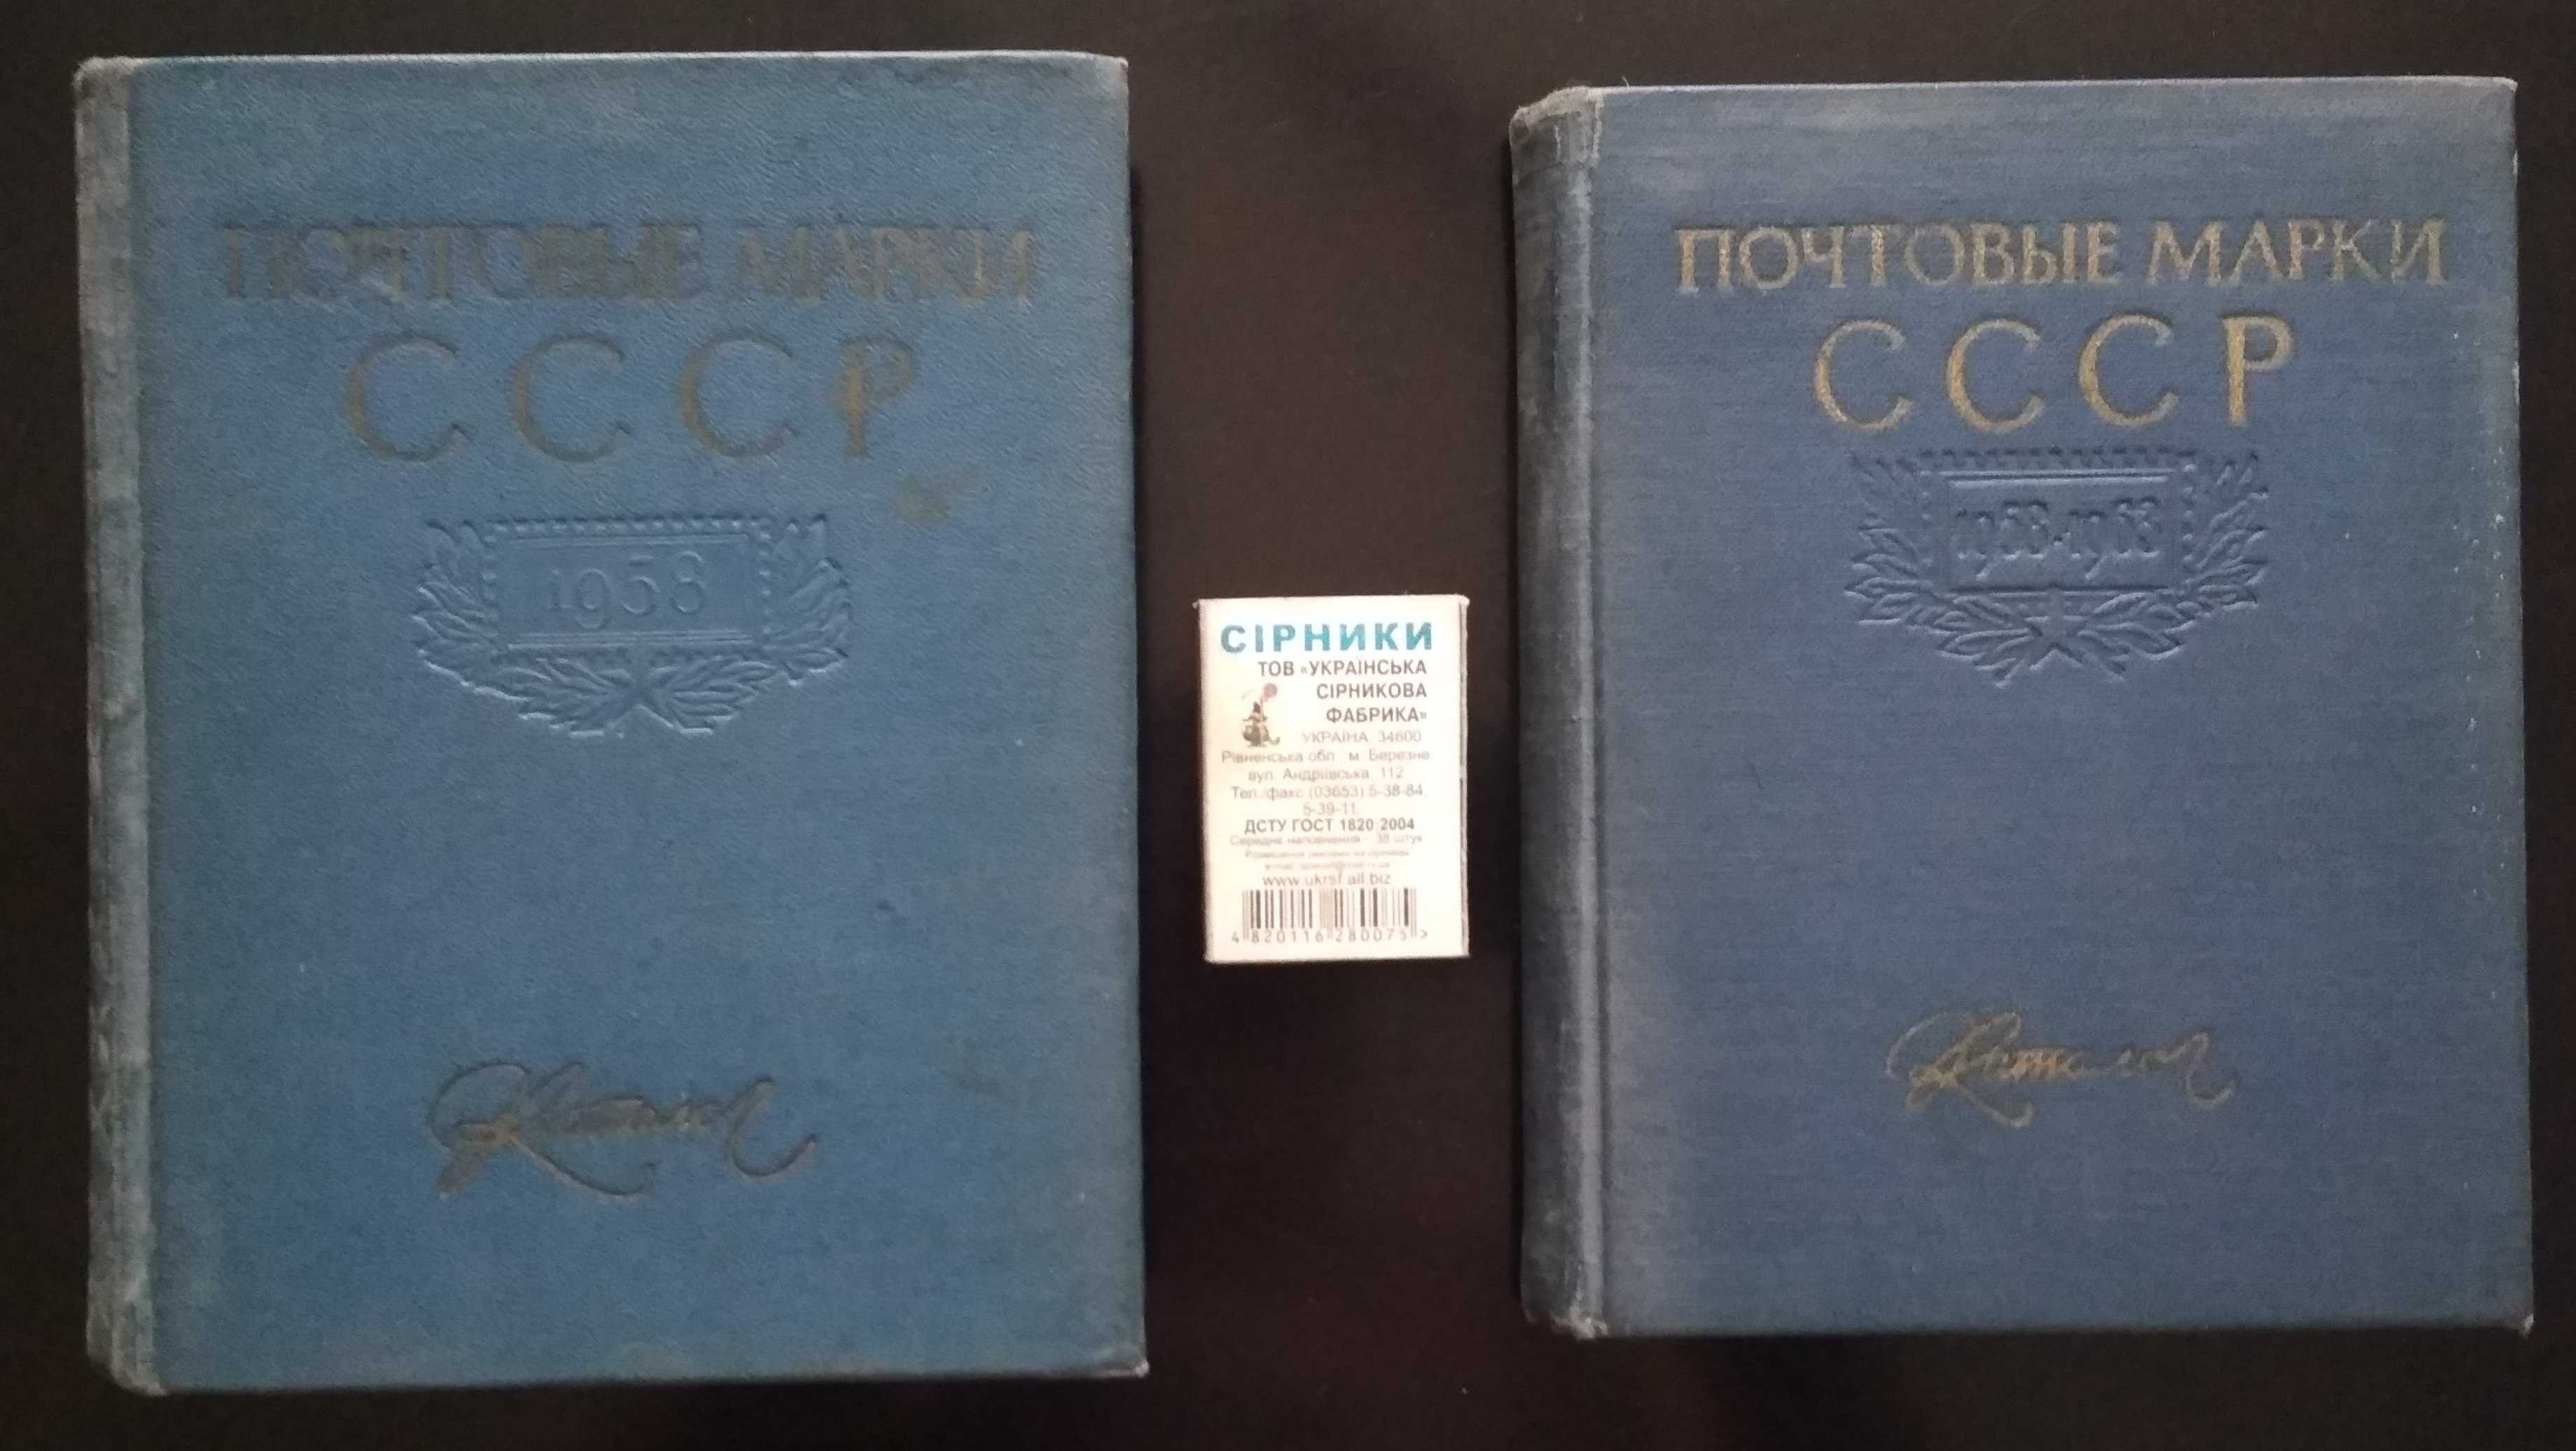 Каталог. Почтовые марки СССР: 1921-1957 г.г. и 1958-1963 г.г.